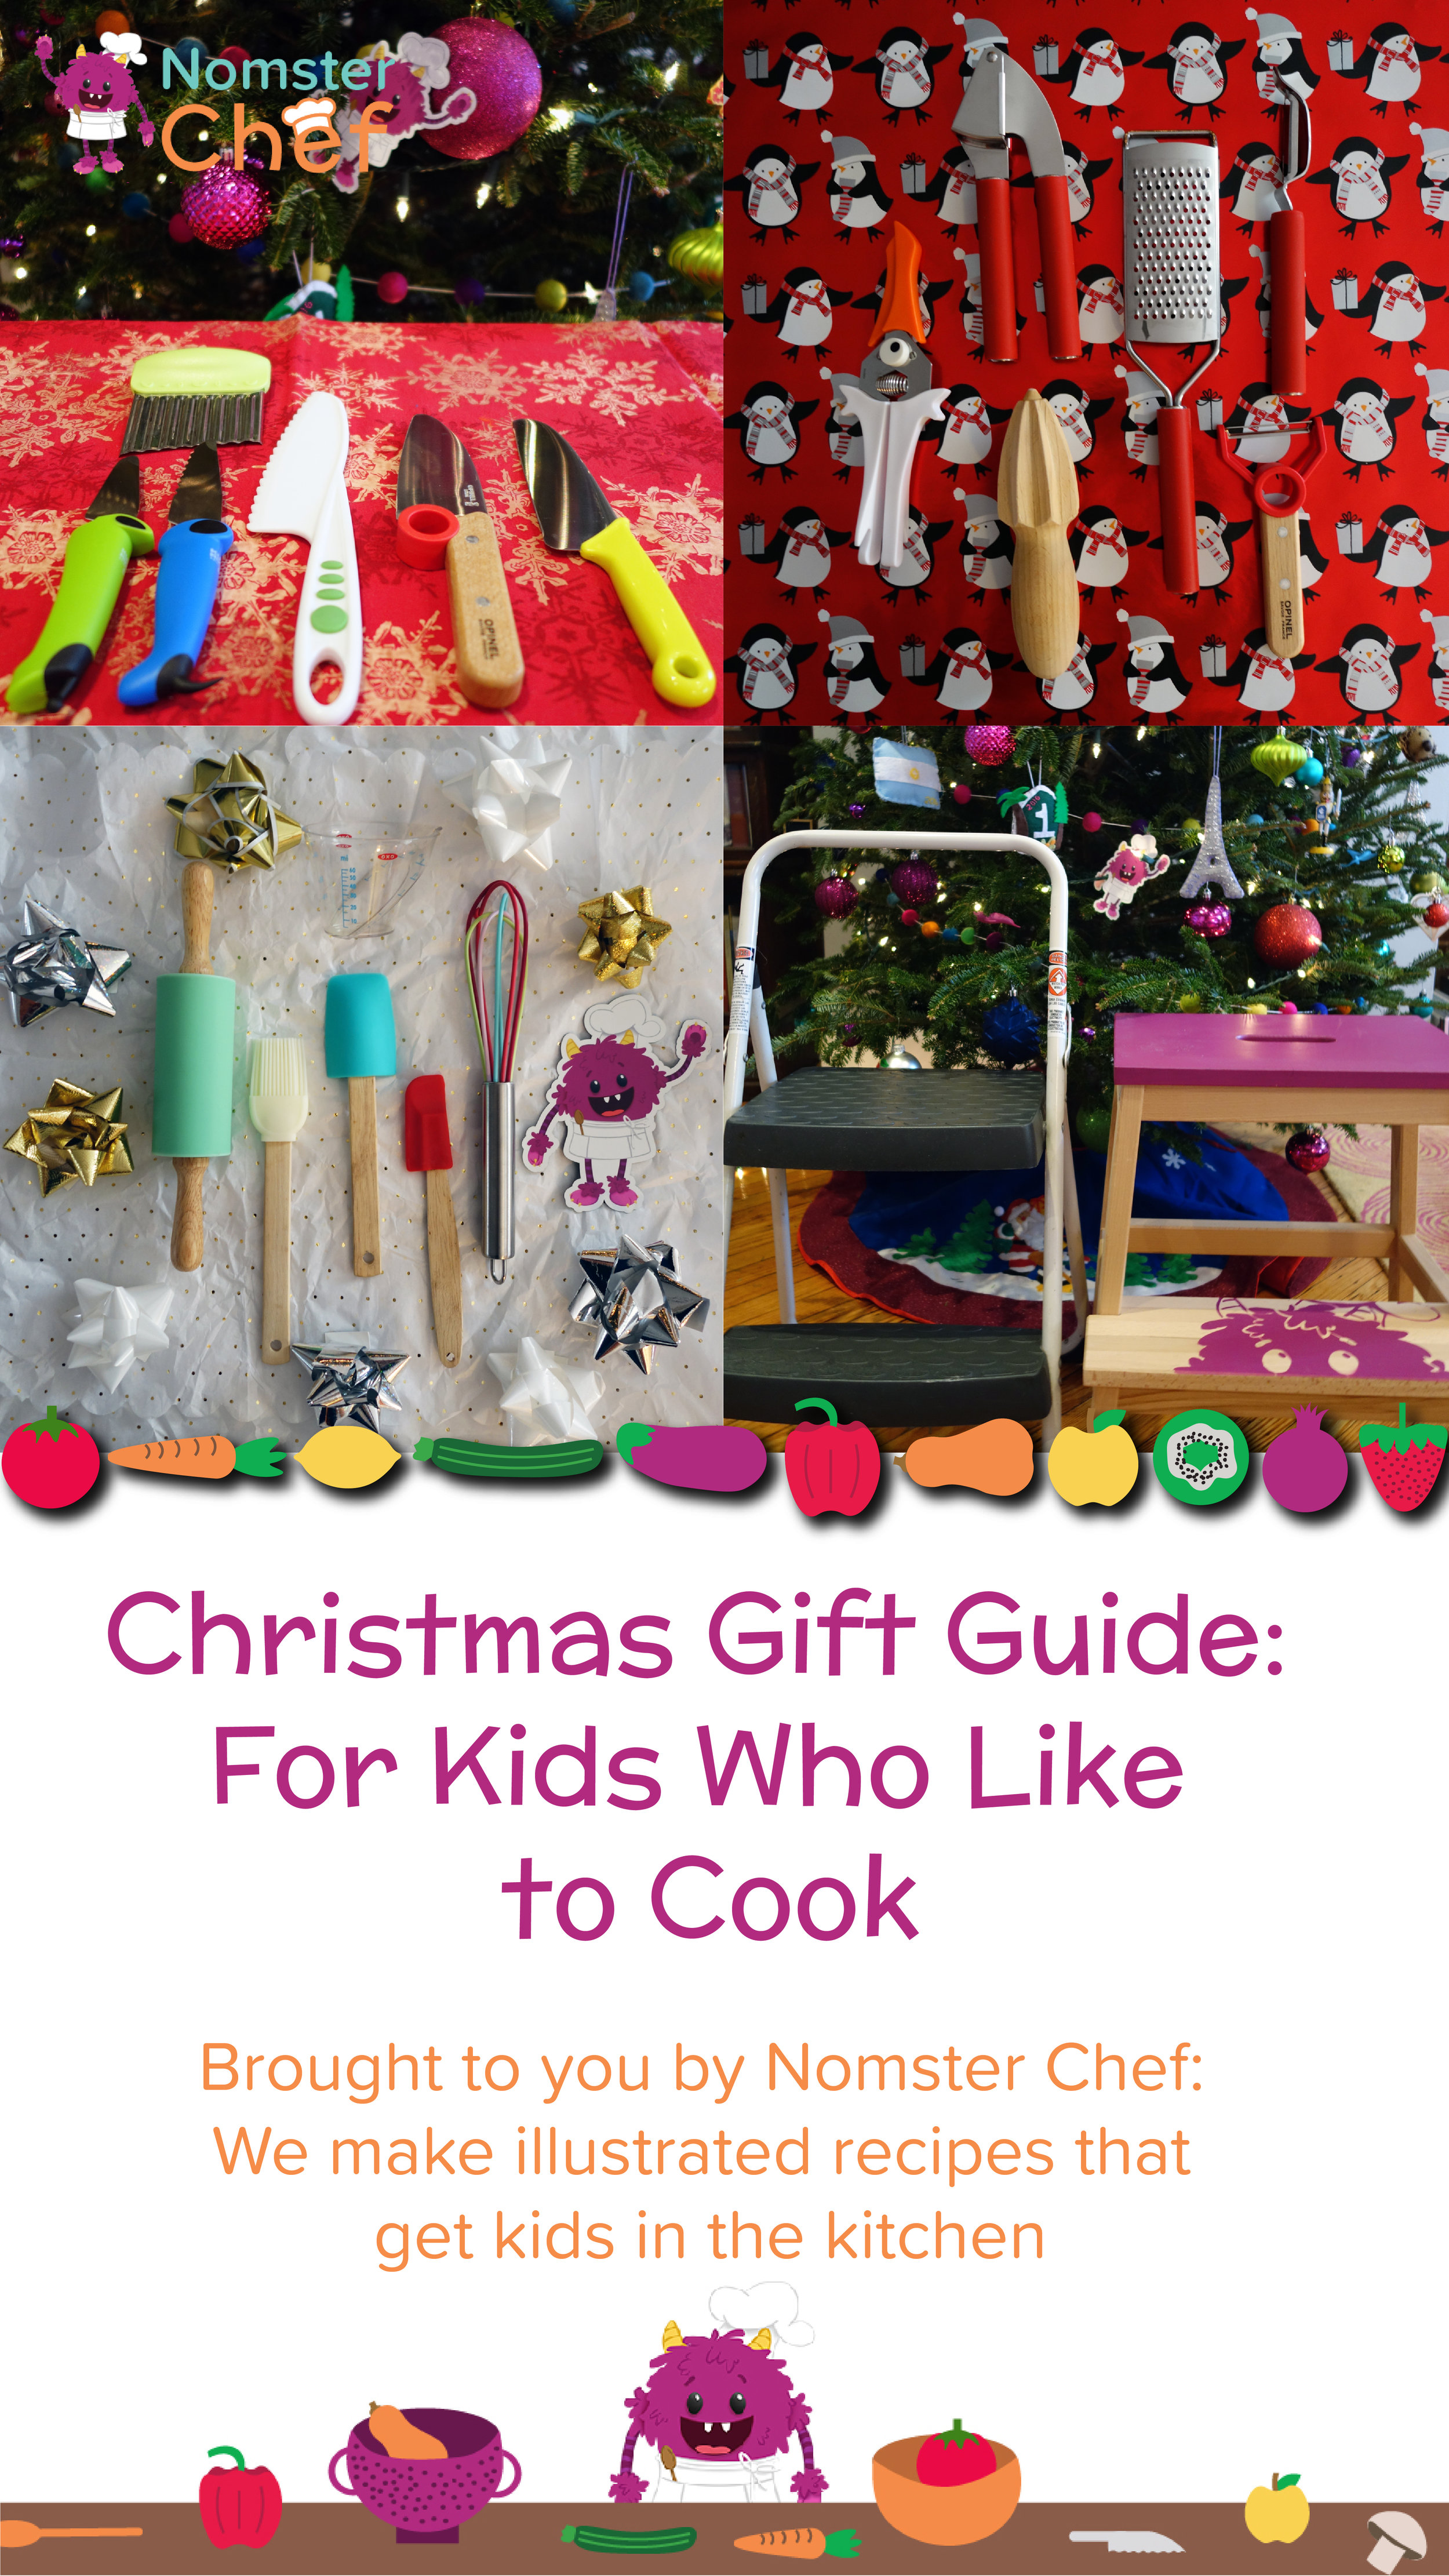 Fun Kitchen Gifts to Make Cooking Fun!